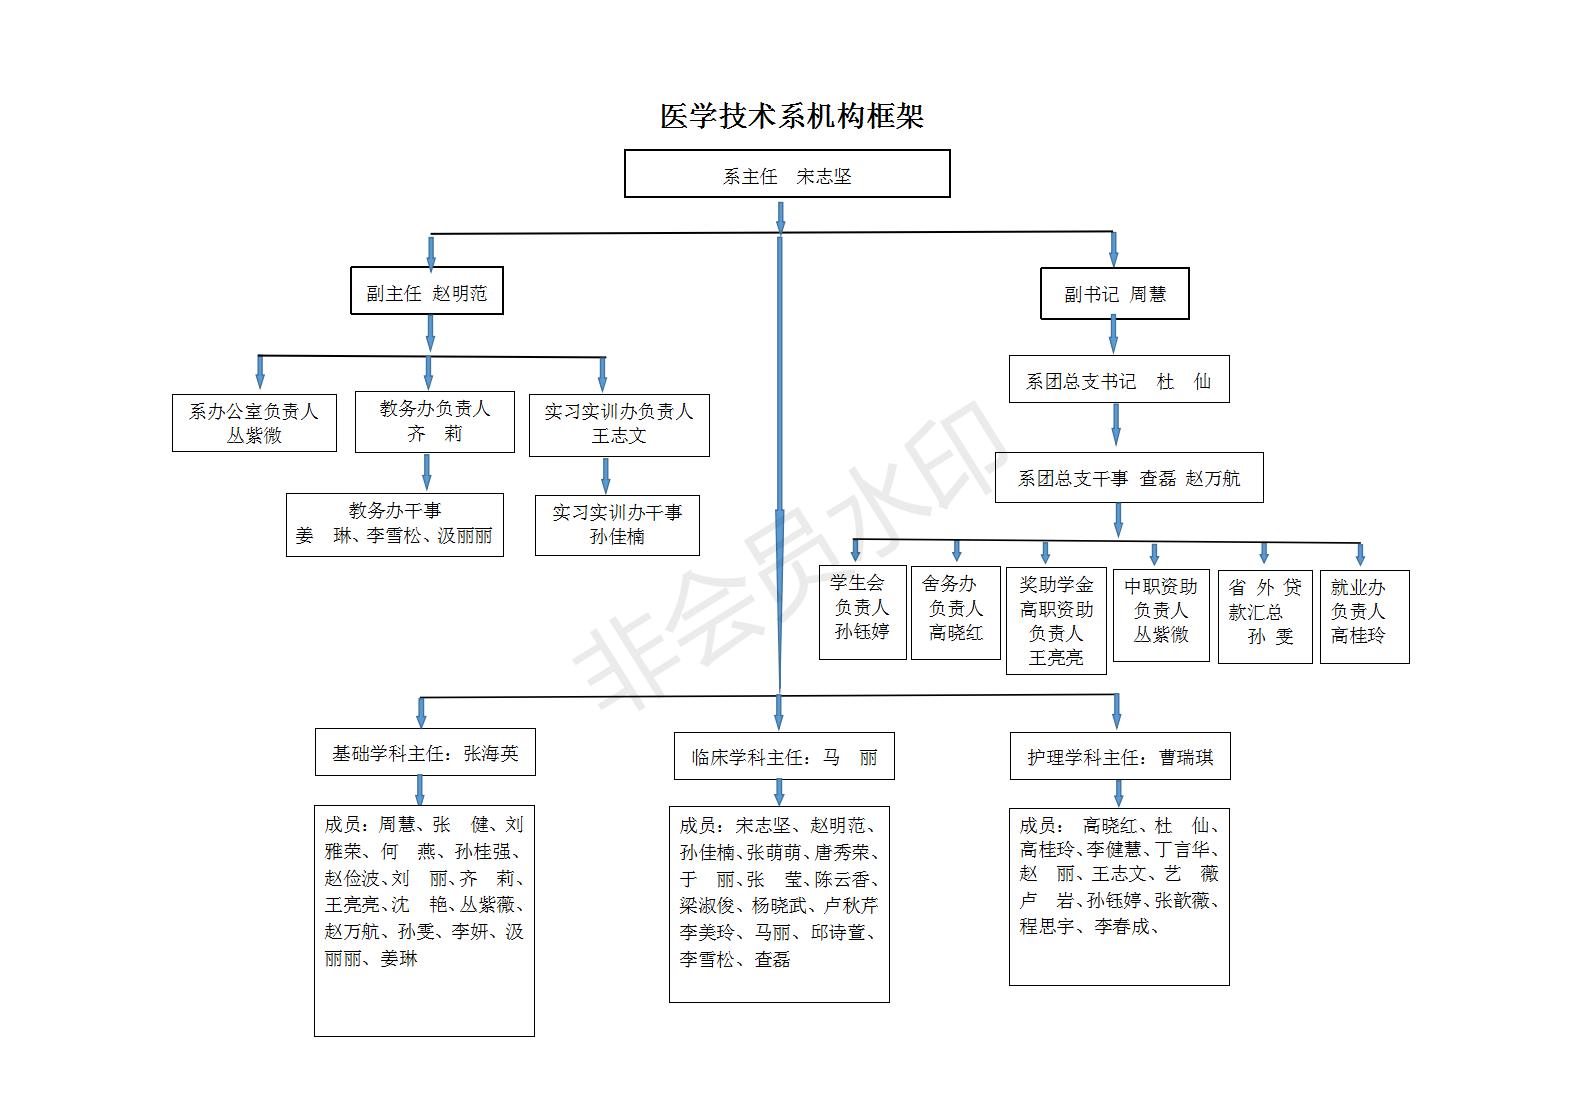 医学技术系机构框架图(1)_01.jpg